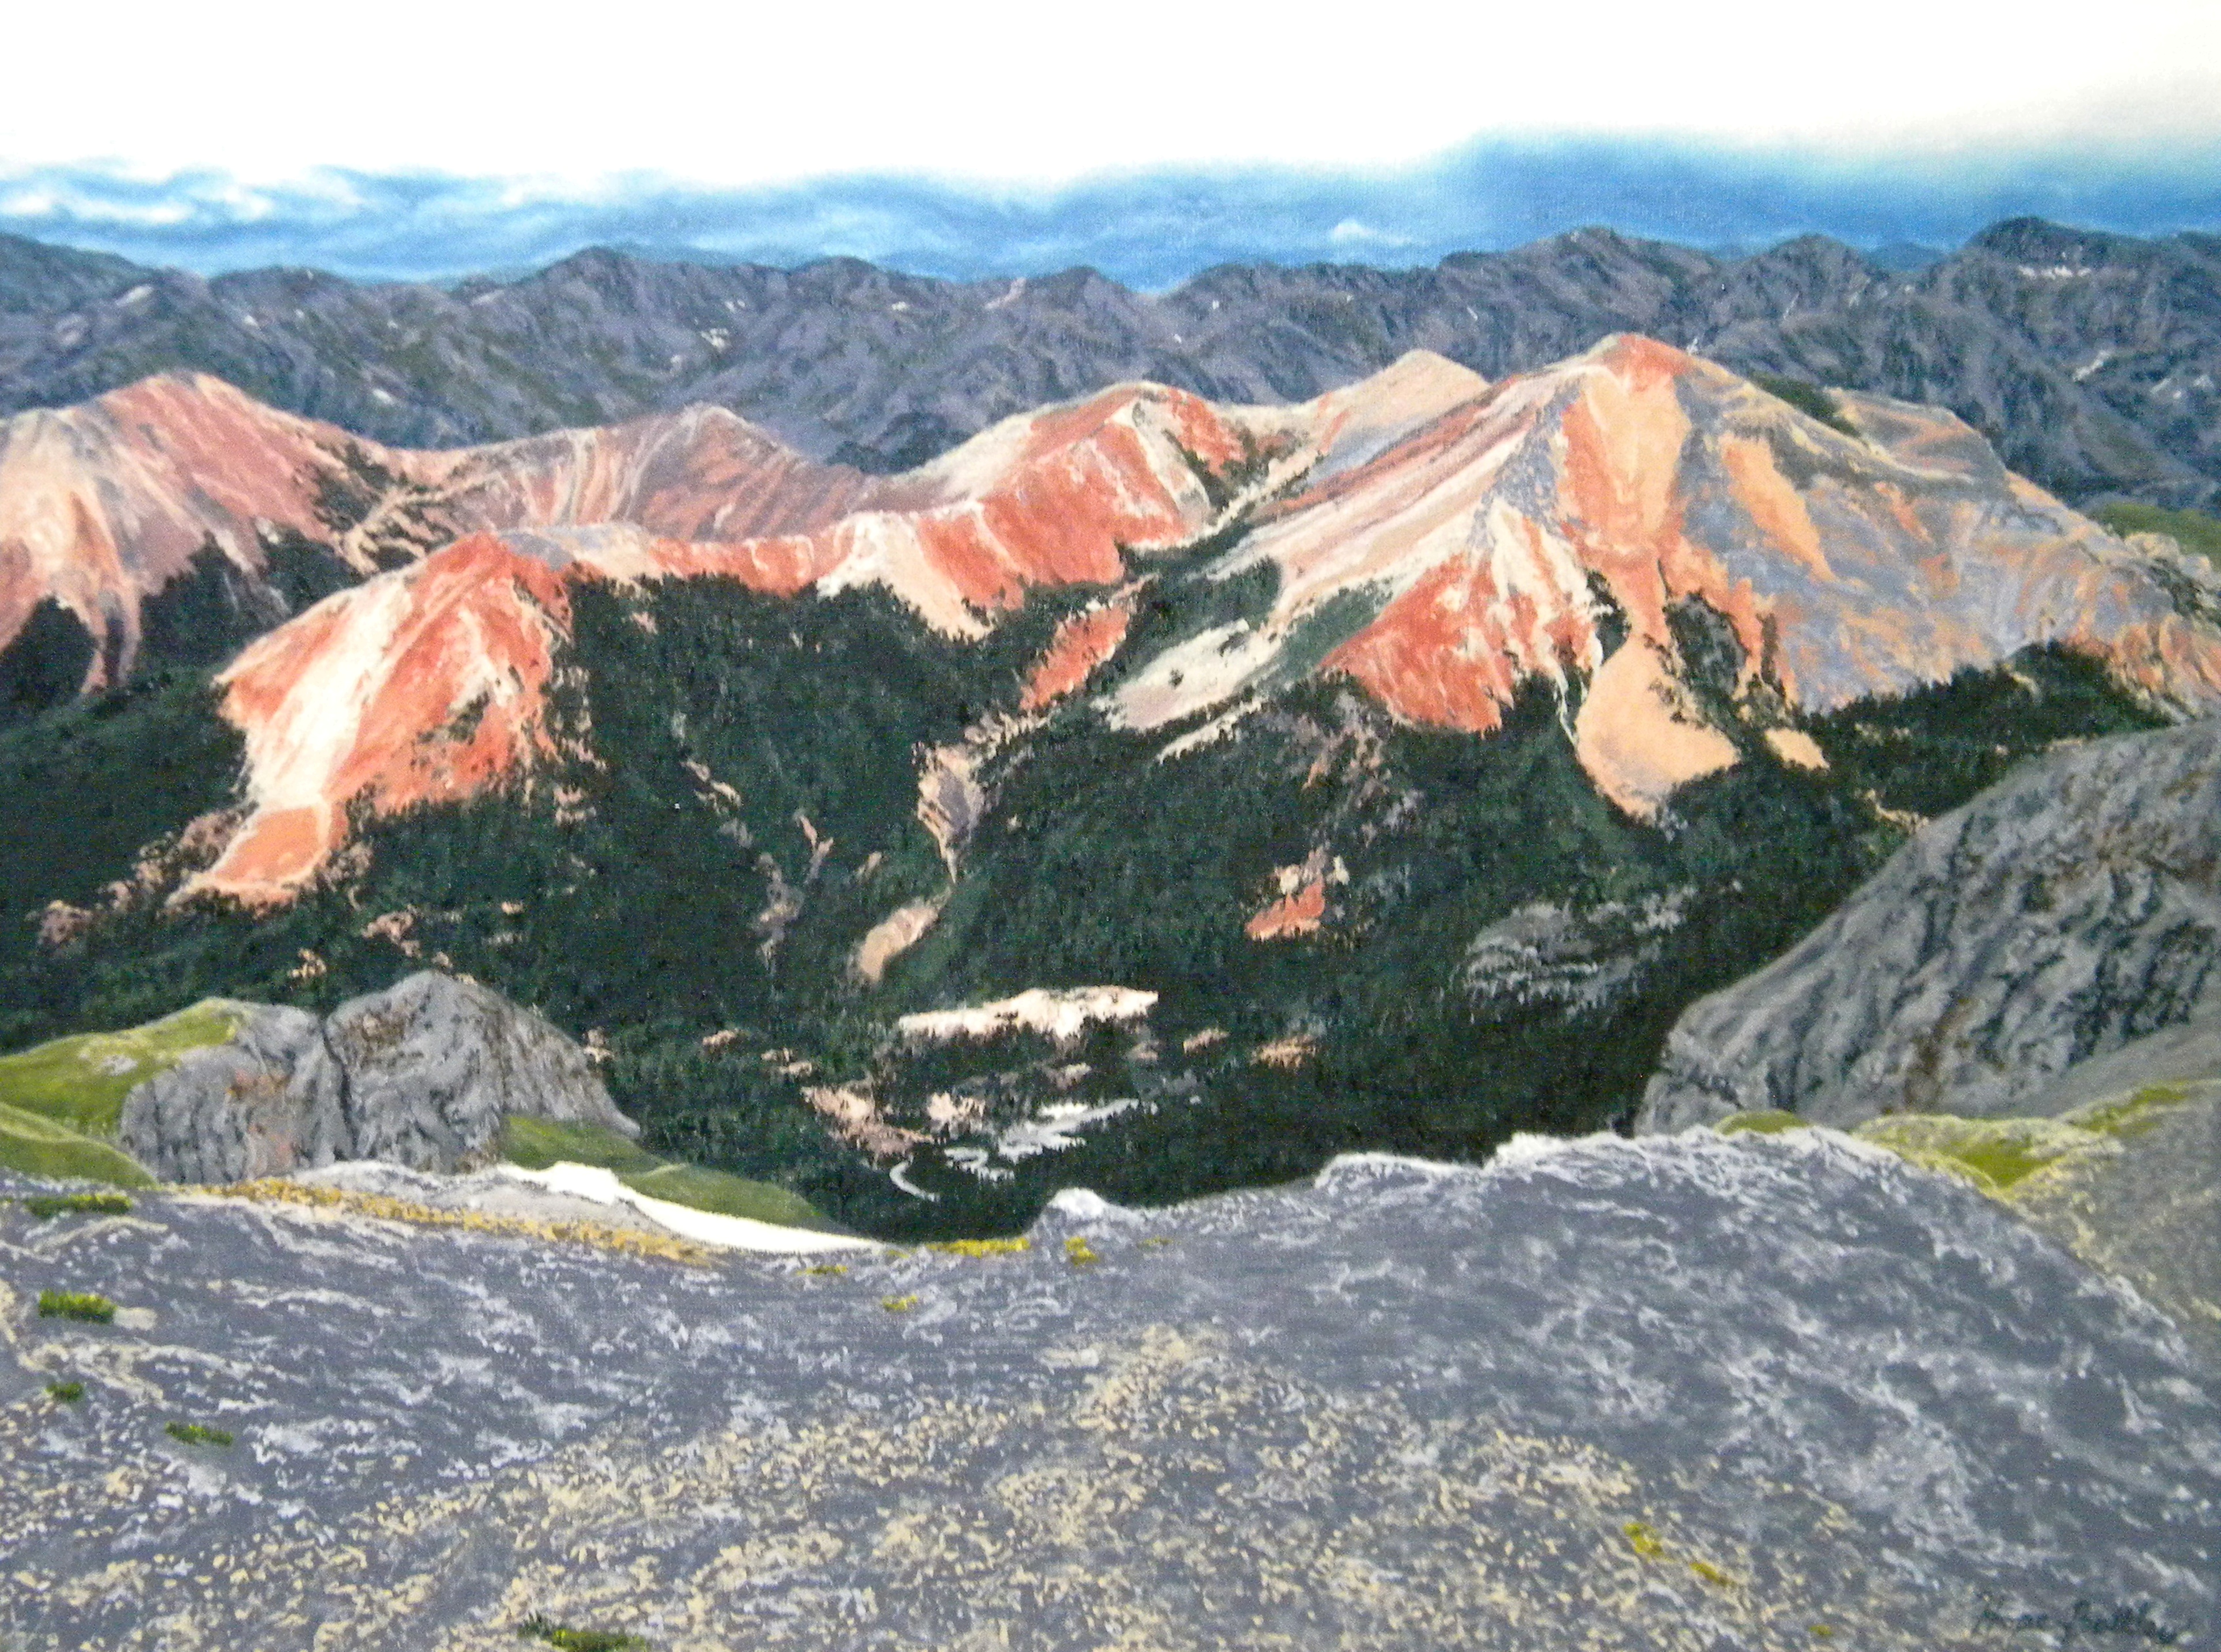 San Juan Mountains at Imogene Pass